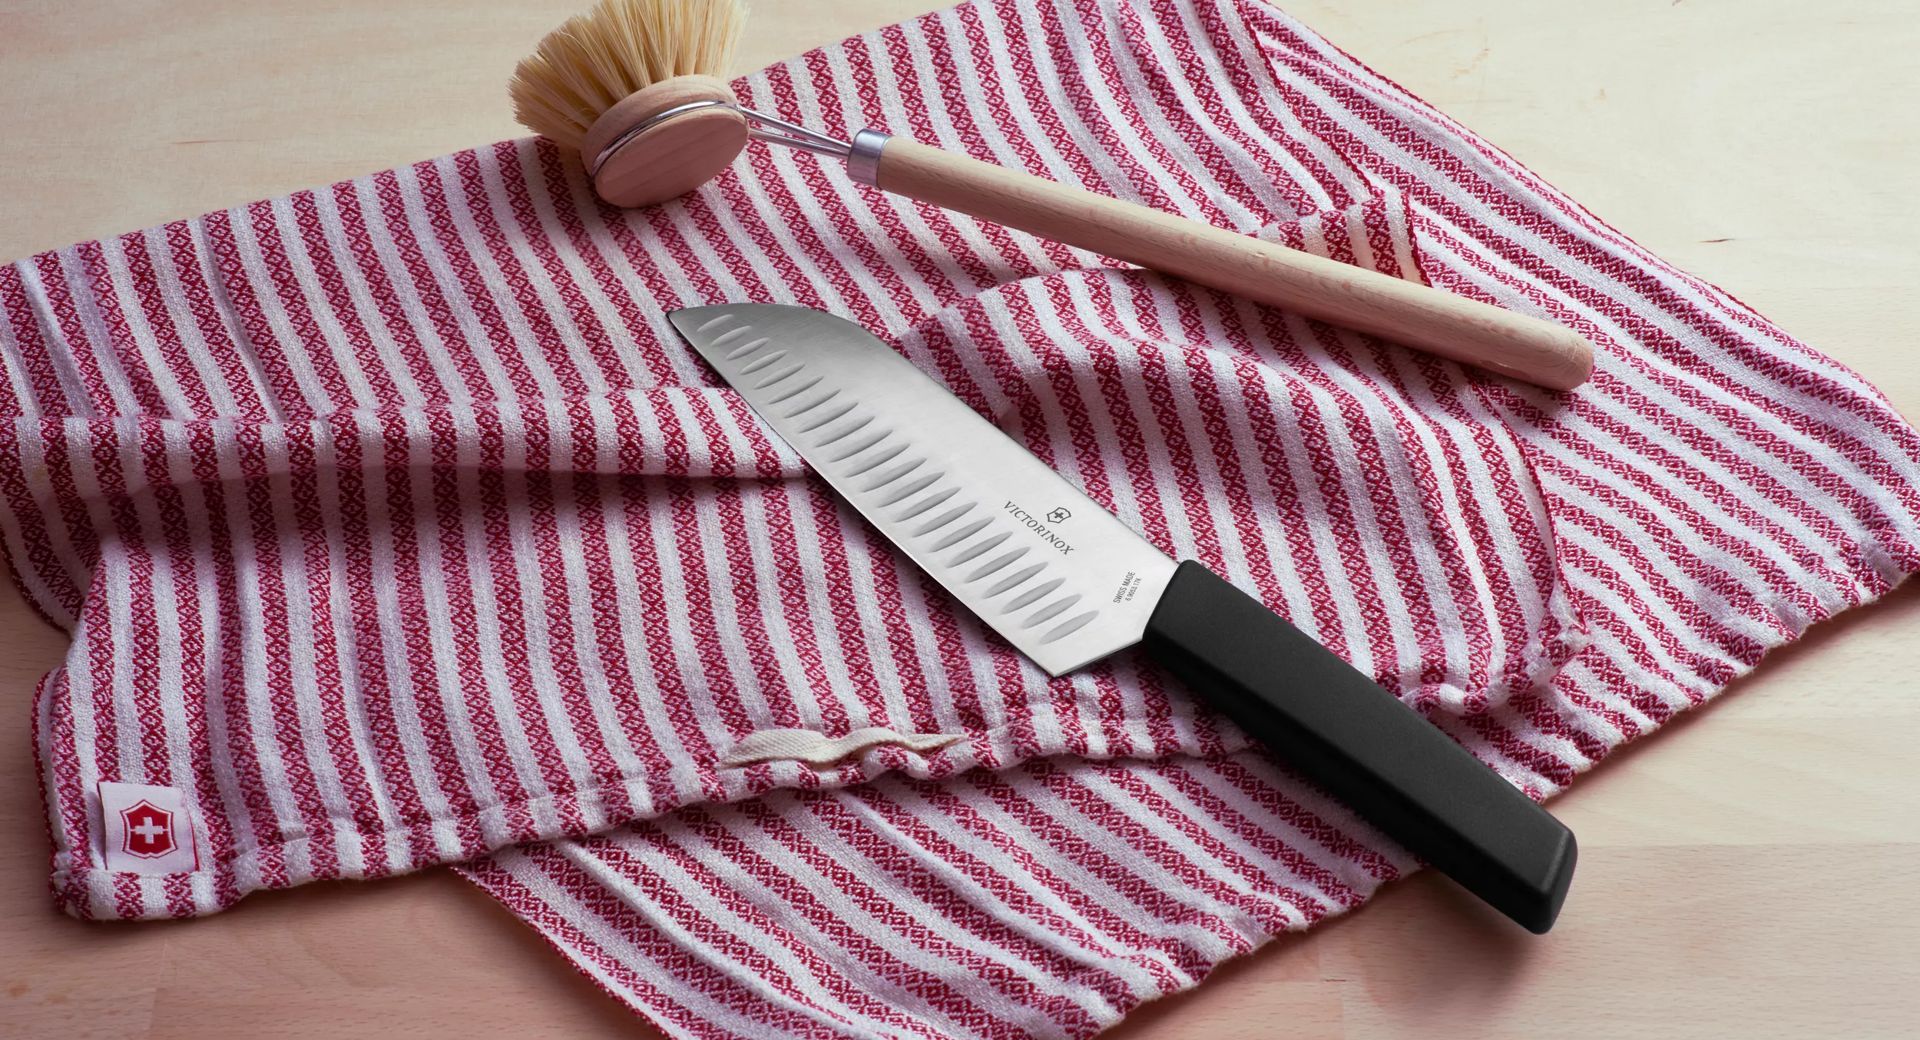 Consejos de cuidado de cuchillos